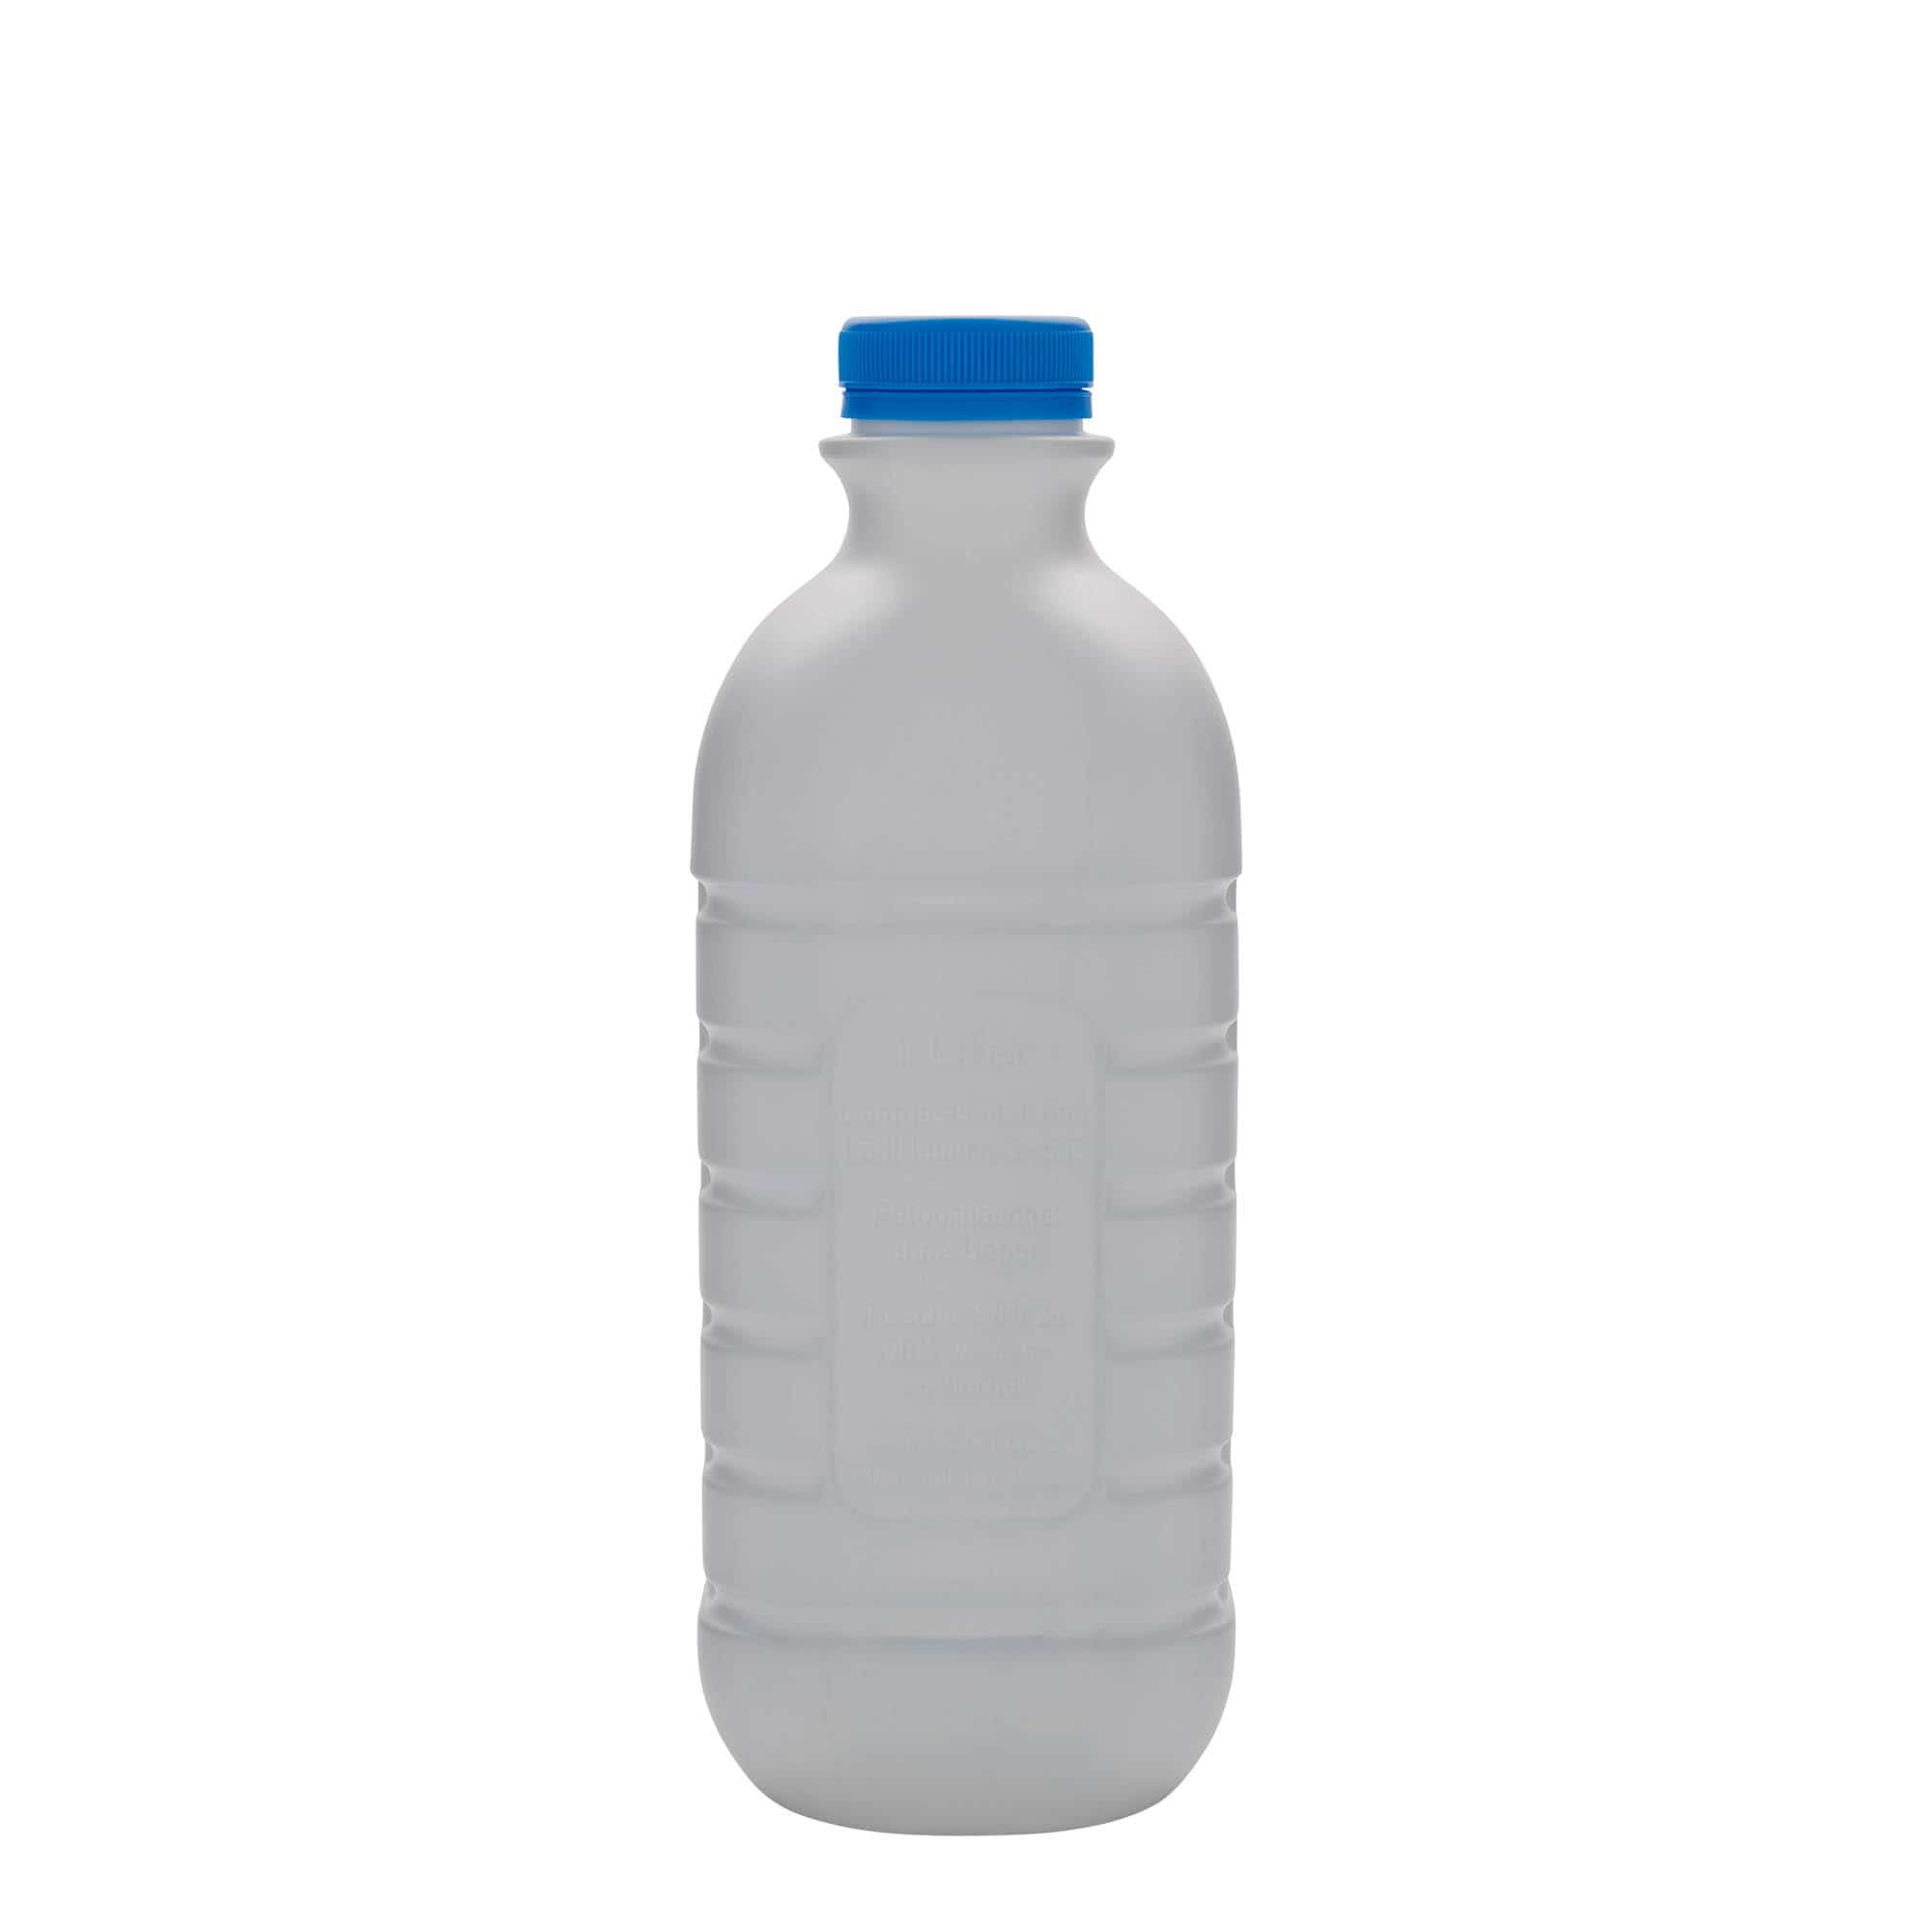 Bouteille de lait 1 000 ml, rectangulaire, plastique PEHD, blanc, bouchage: PEHD40